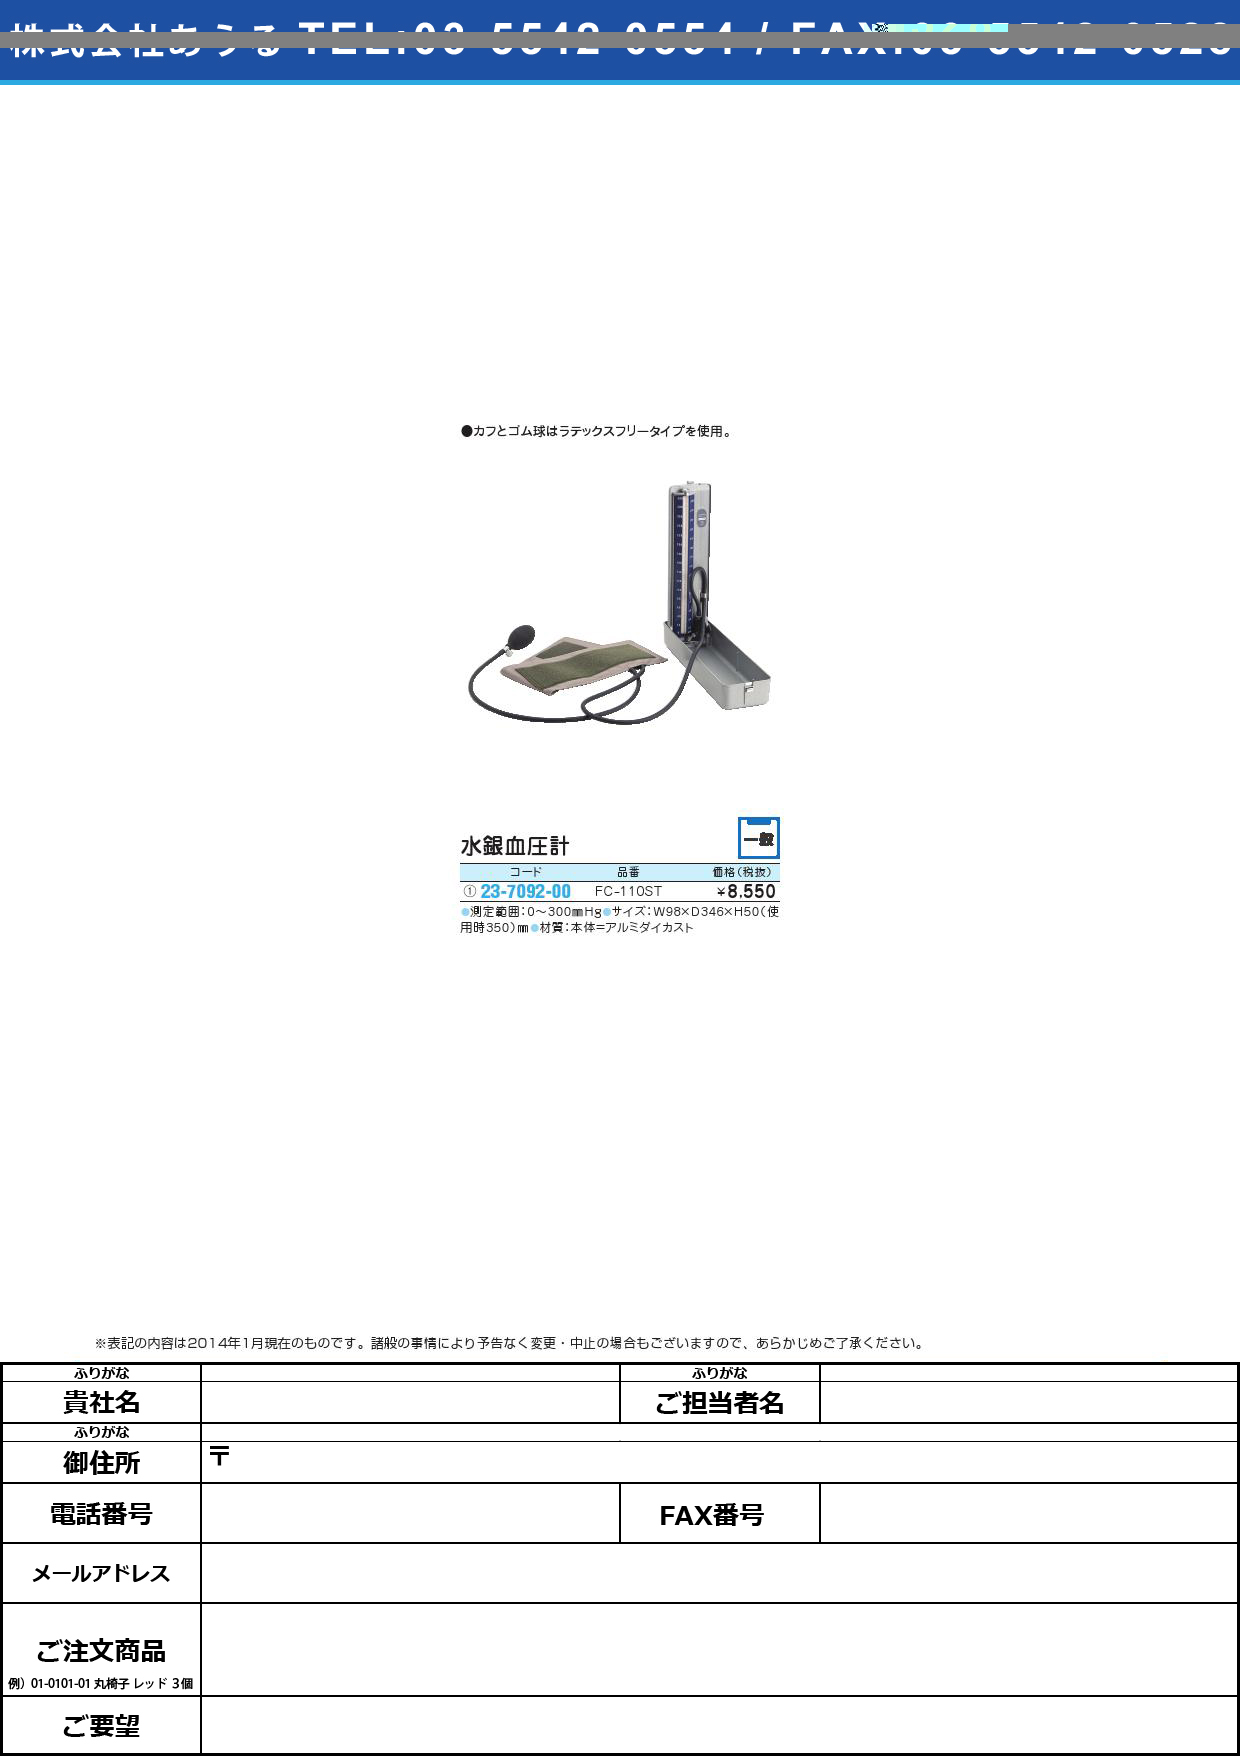 水銀血圧計 ｽｲｷﾞﾝｹﾂｱﾂｹｲ(23-7092-00)FC-110ST